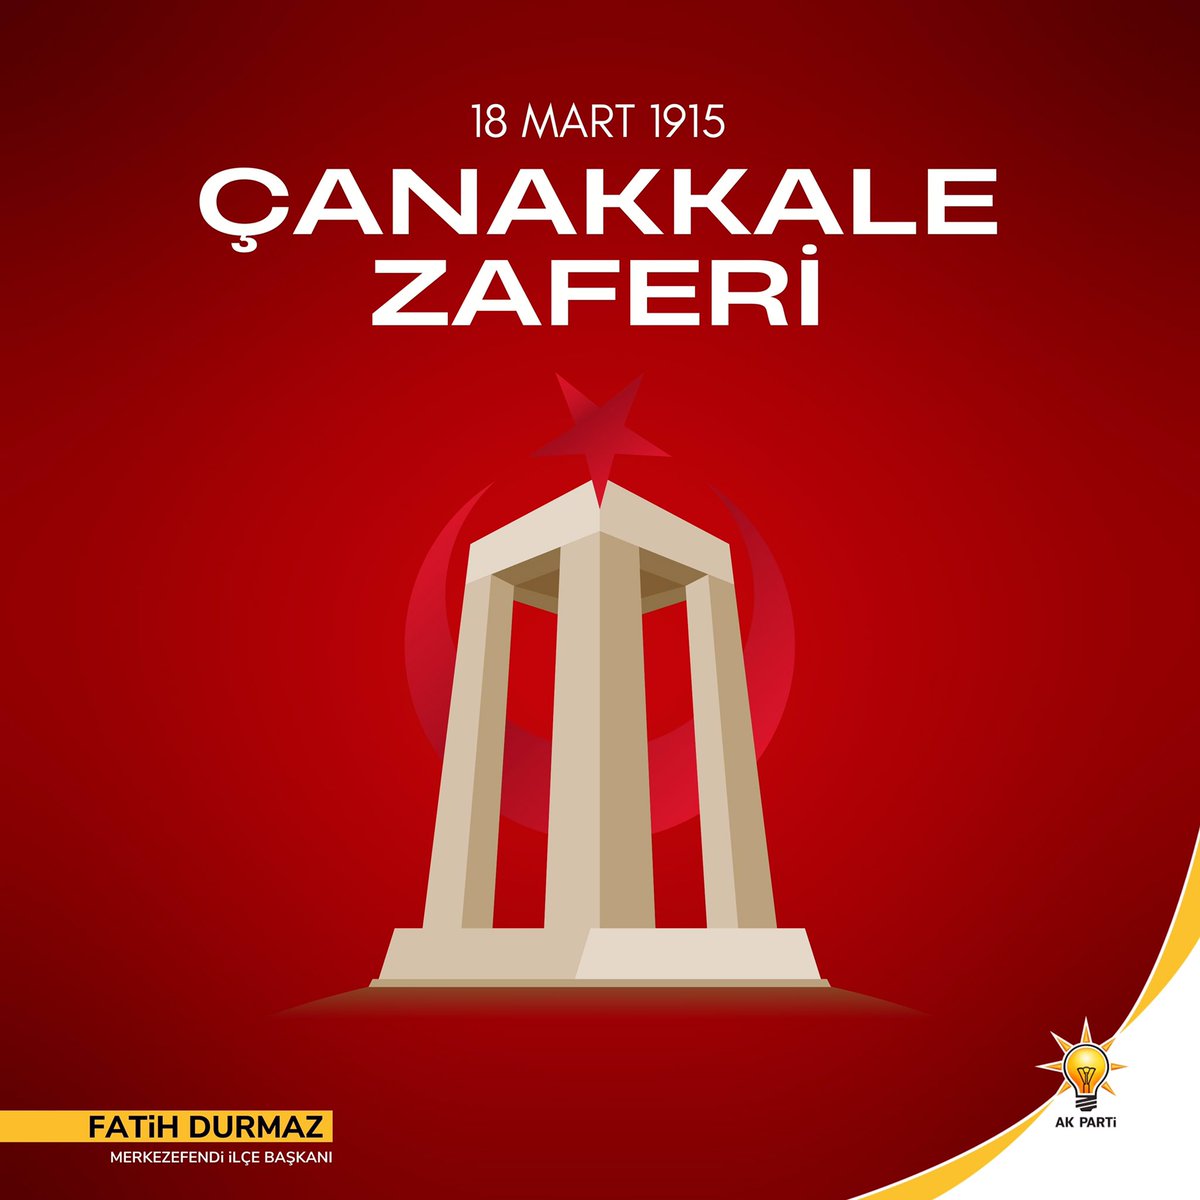 18 Mart Çanakkale Zaferi'nin 109. yıl dönümünde; başta Gazi Mustafa Kemal Atatürk ve bu destanı yazan tüm şehitlerimizi rahmet, minnet ve saygıyla anıyoruz.